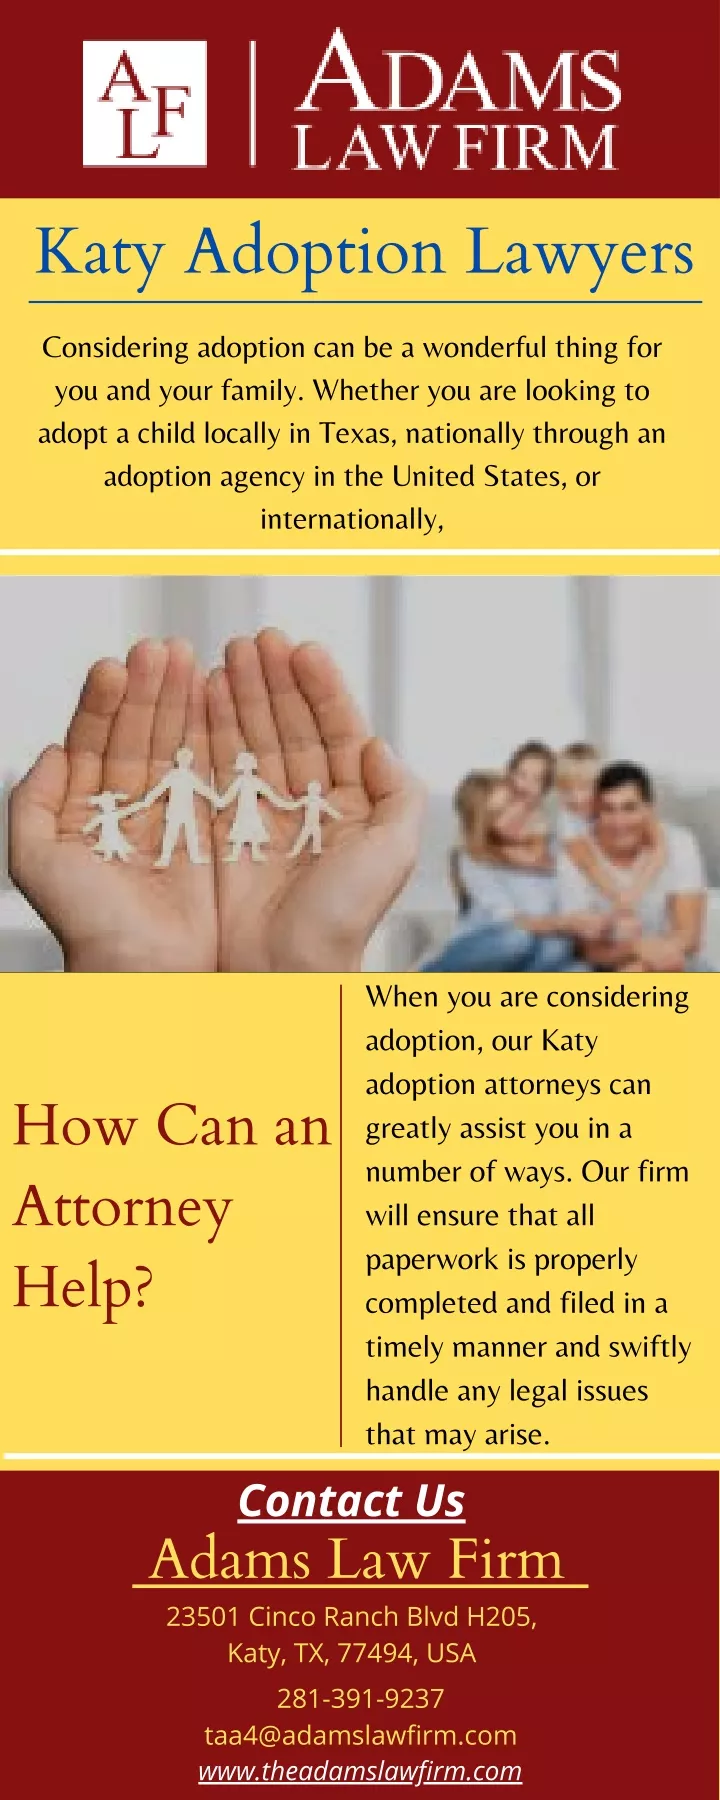 katy adoption lawyers